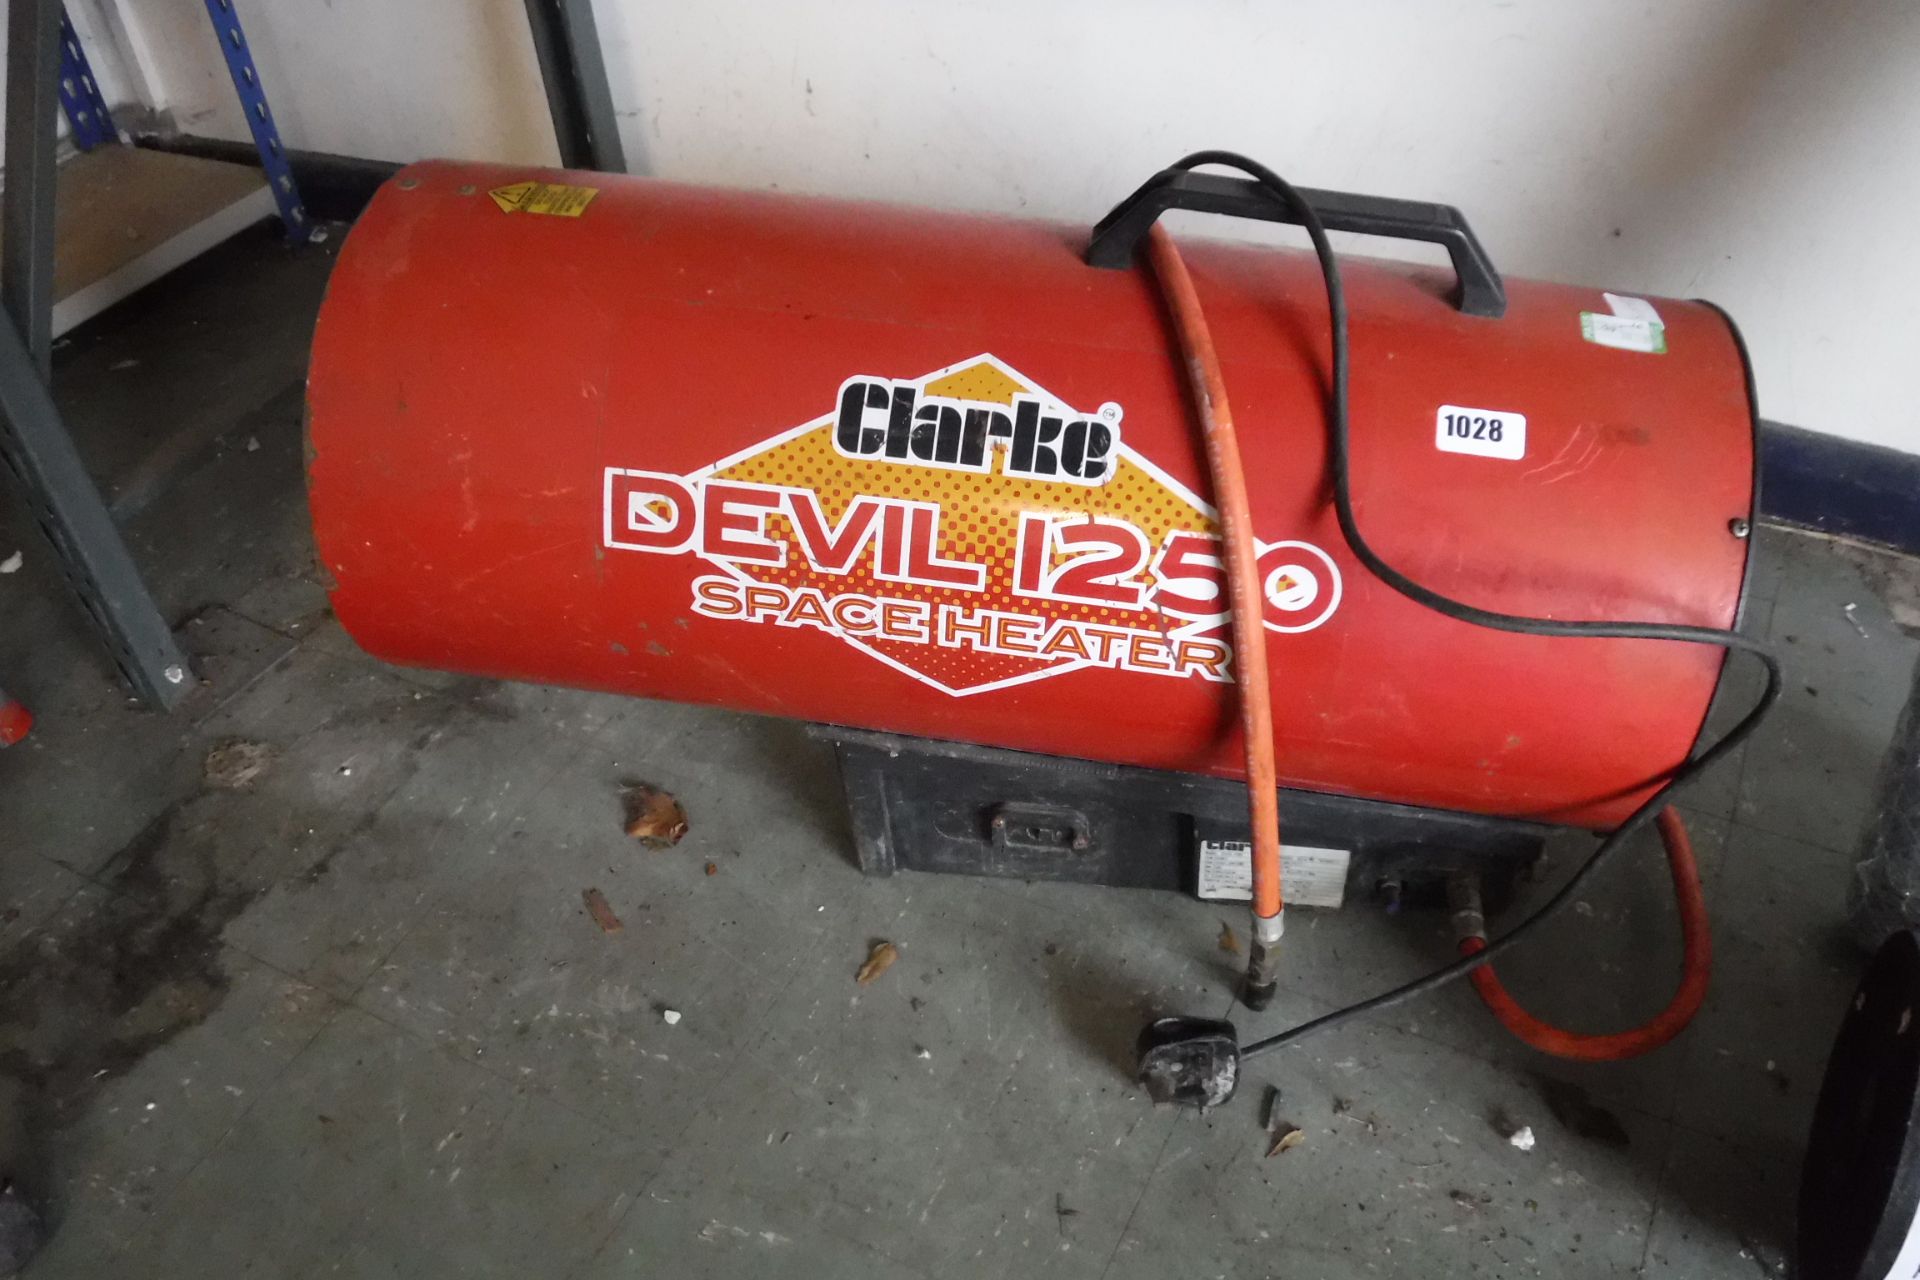 (10) Clarke Devil 1250 space heater